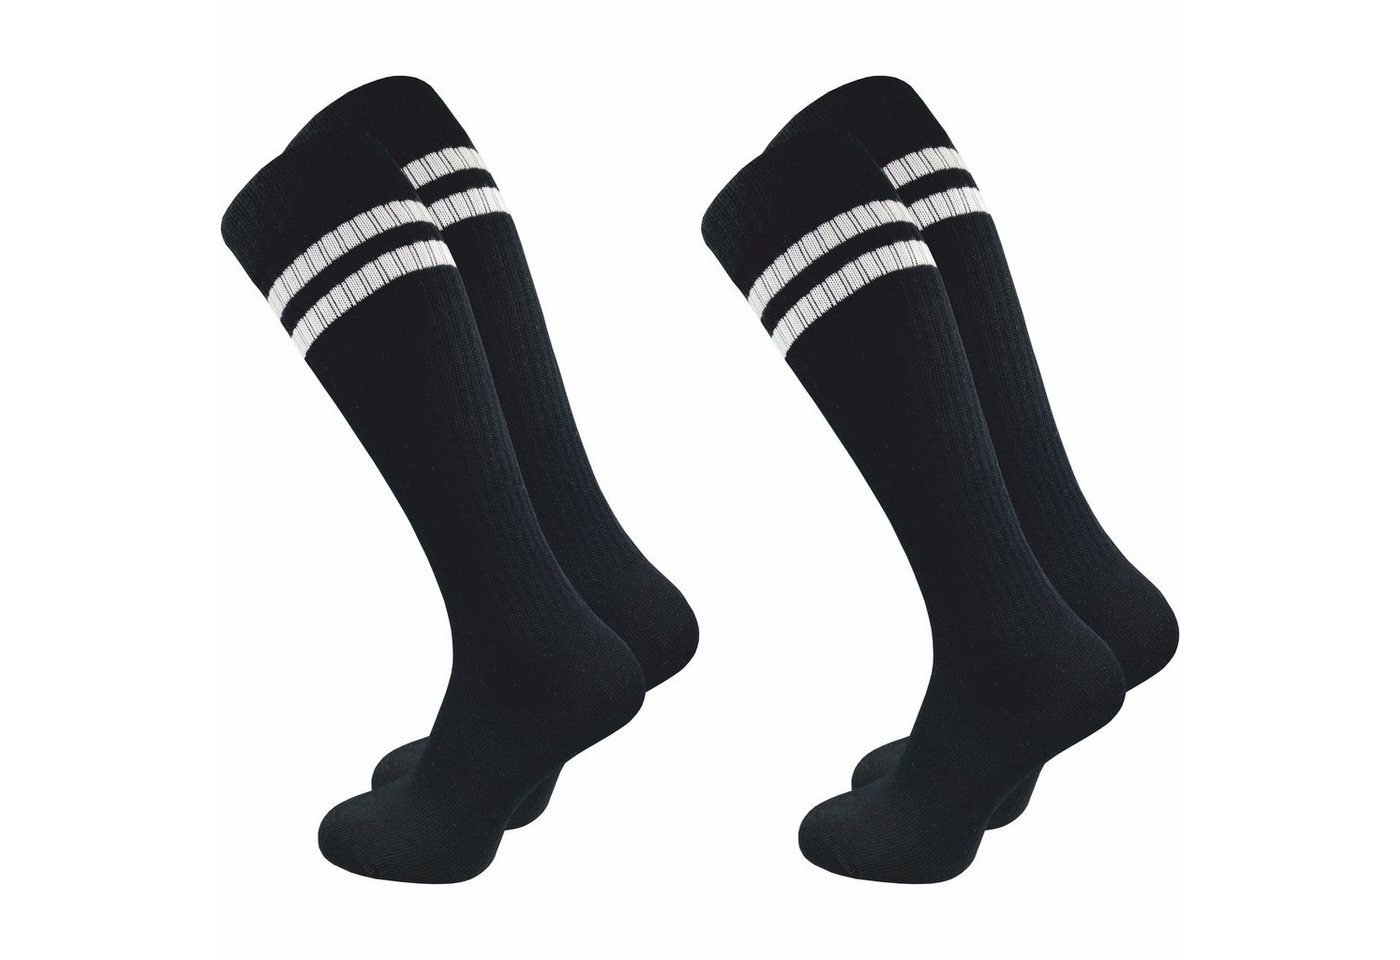 GAWILO Kniestrümpfe Retro für Damen mit stylischen Streifen, weiß & schwarz, aus Baumwolle (2 Paar) Knielange Socken im sportlichen Look - auch zum Wandern geeignet von GAWILO